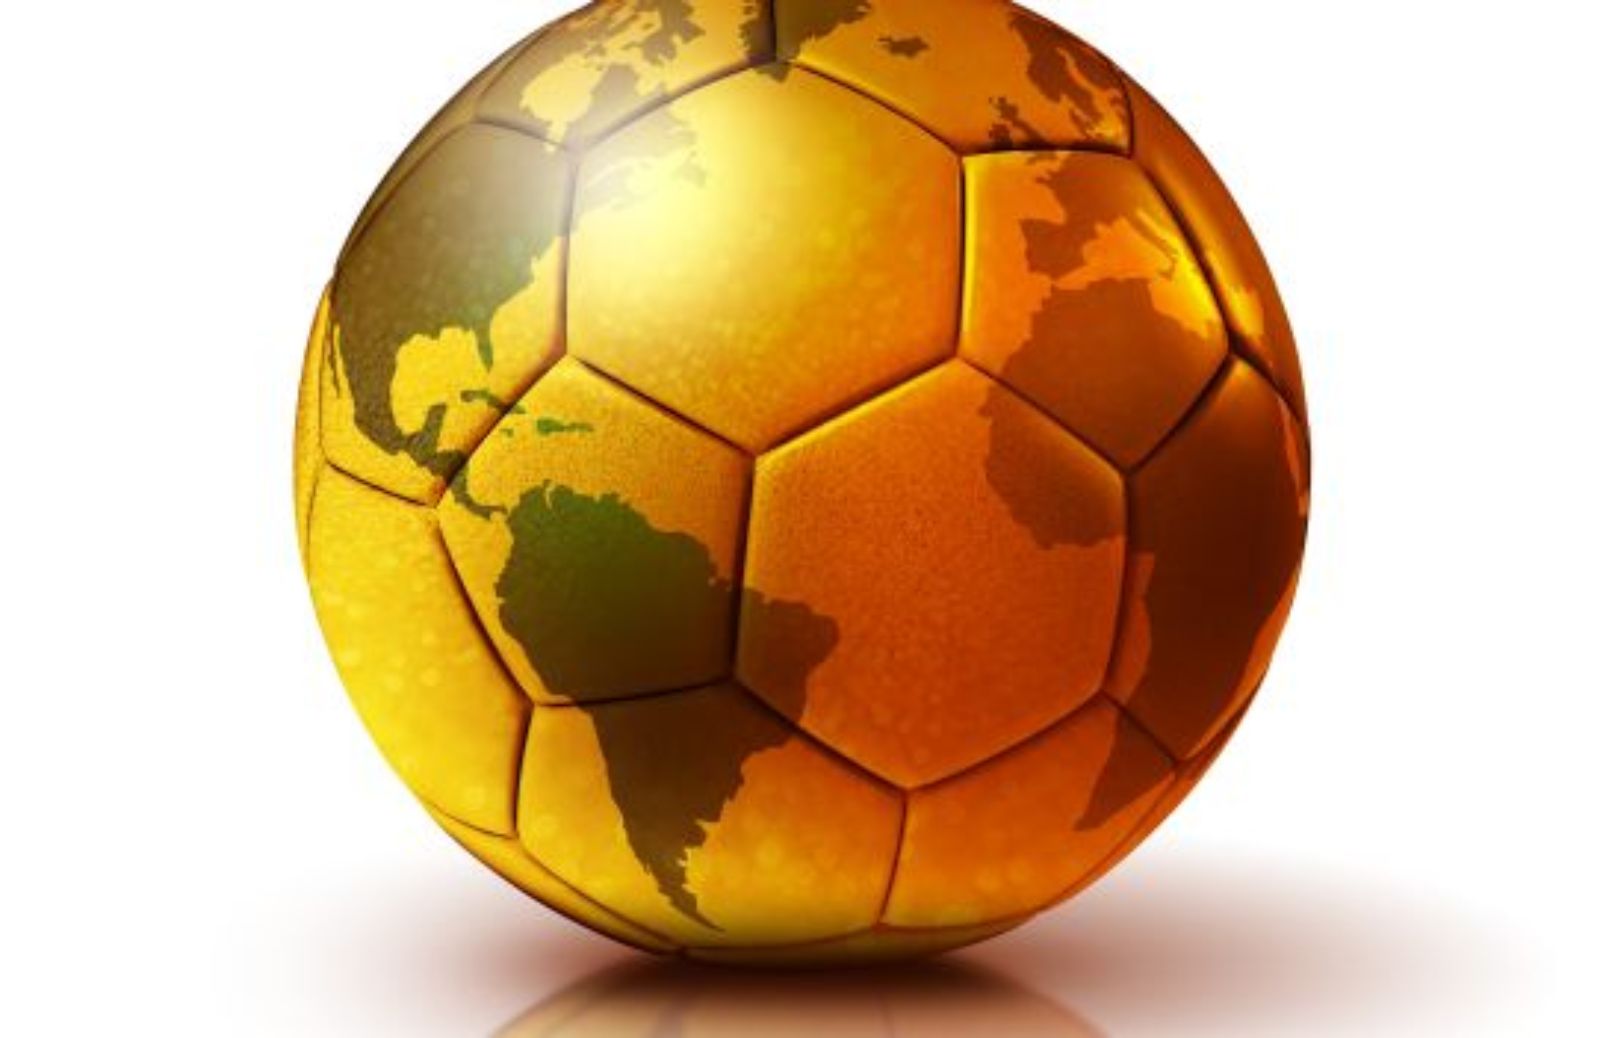 Le squadre qualificate ai mondiali di calcio 2014